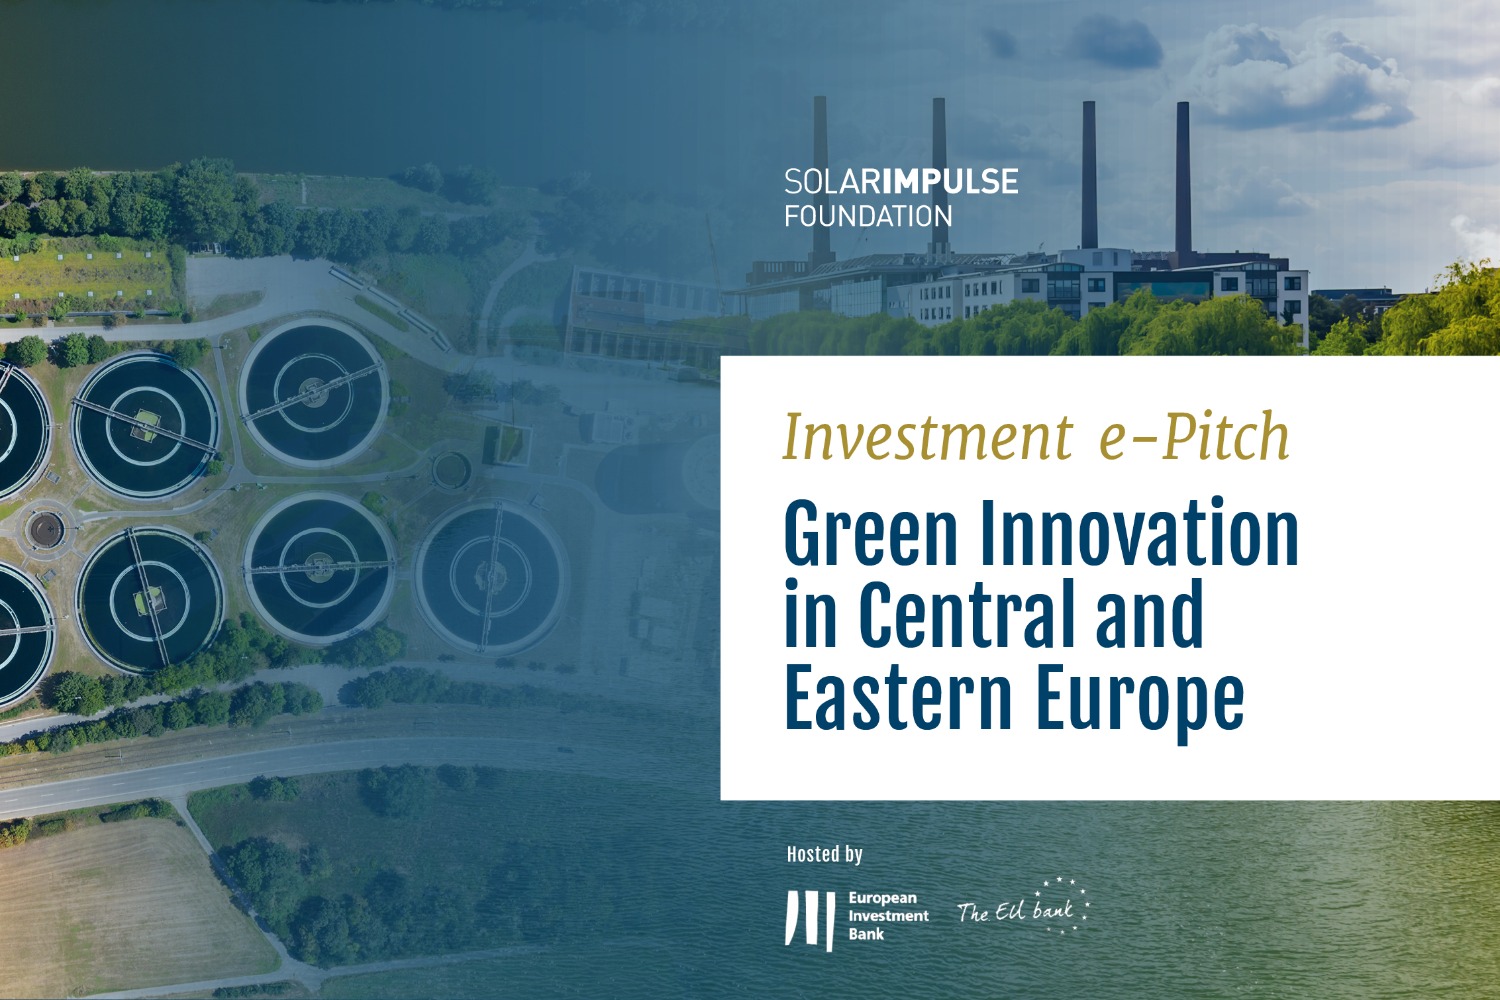 Solar Impulse Investment e-Pitch organisé par la Banque européenne d'investissement